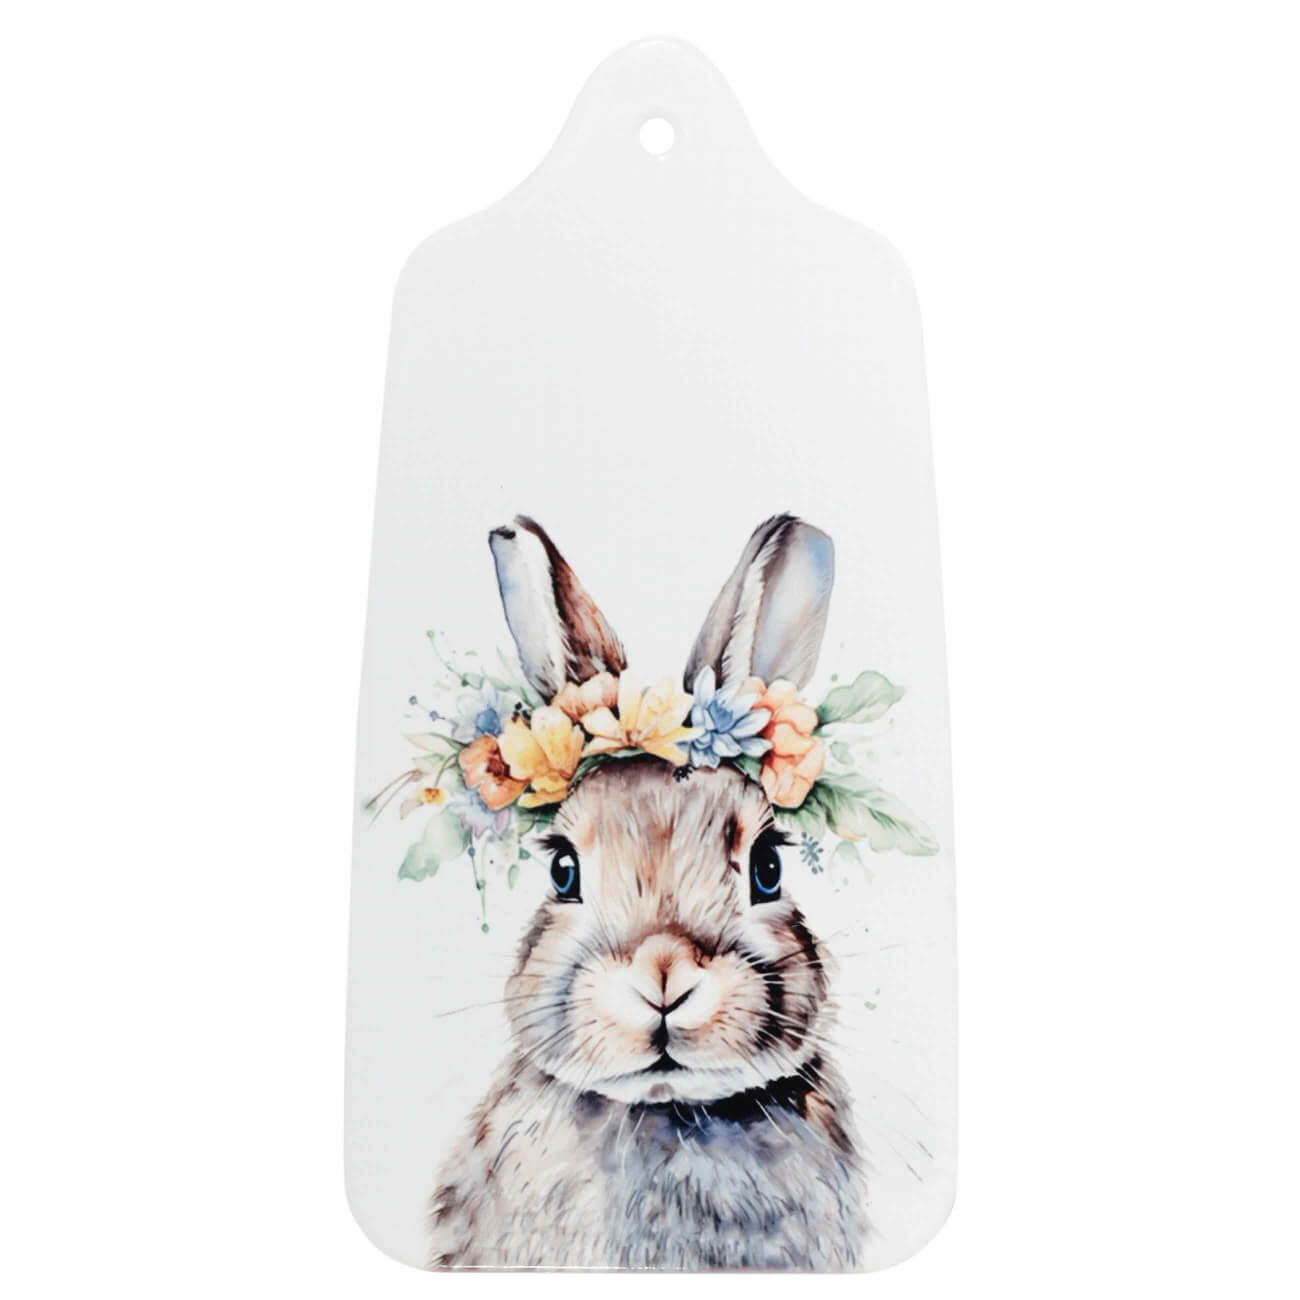 Подставка под горячее, 14x28 см, керамика/пробка, бежевая, Кролик в венке, Pure Easter штопор бутылка и пробка на подложке